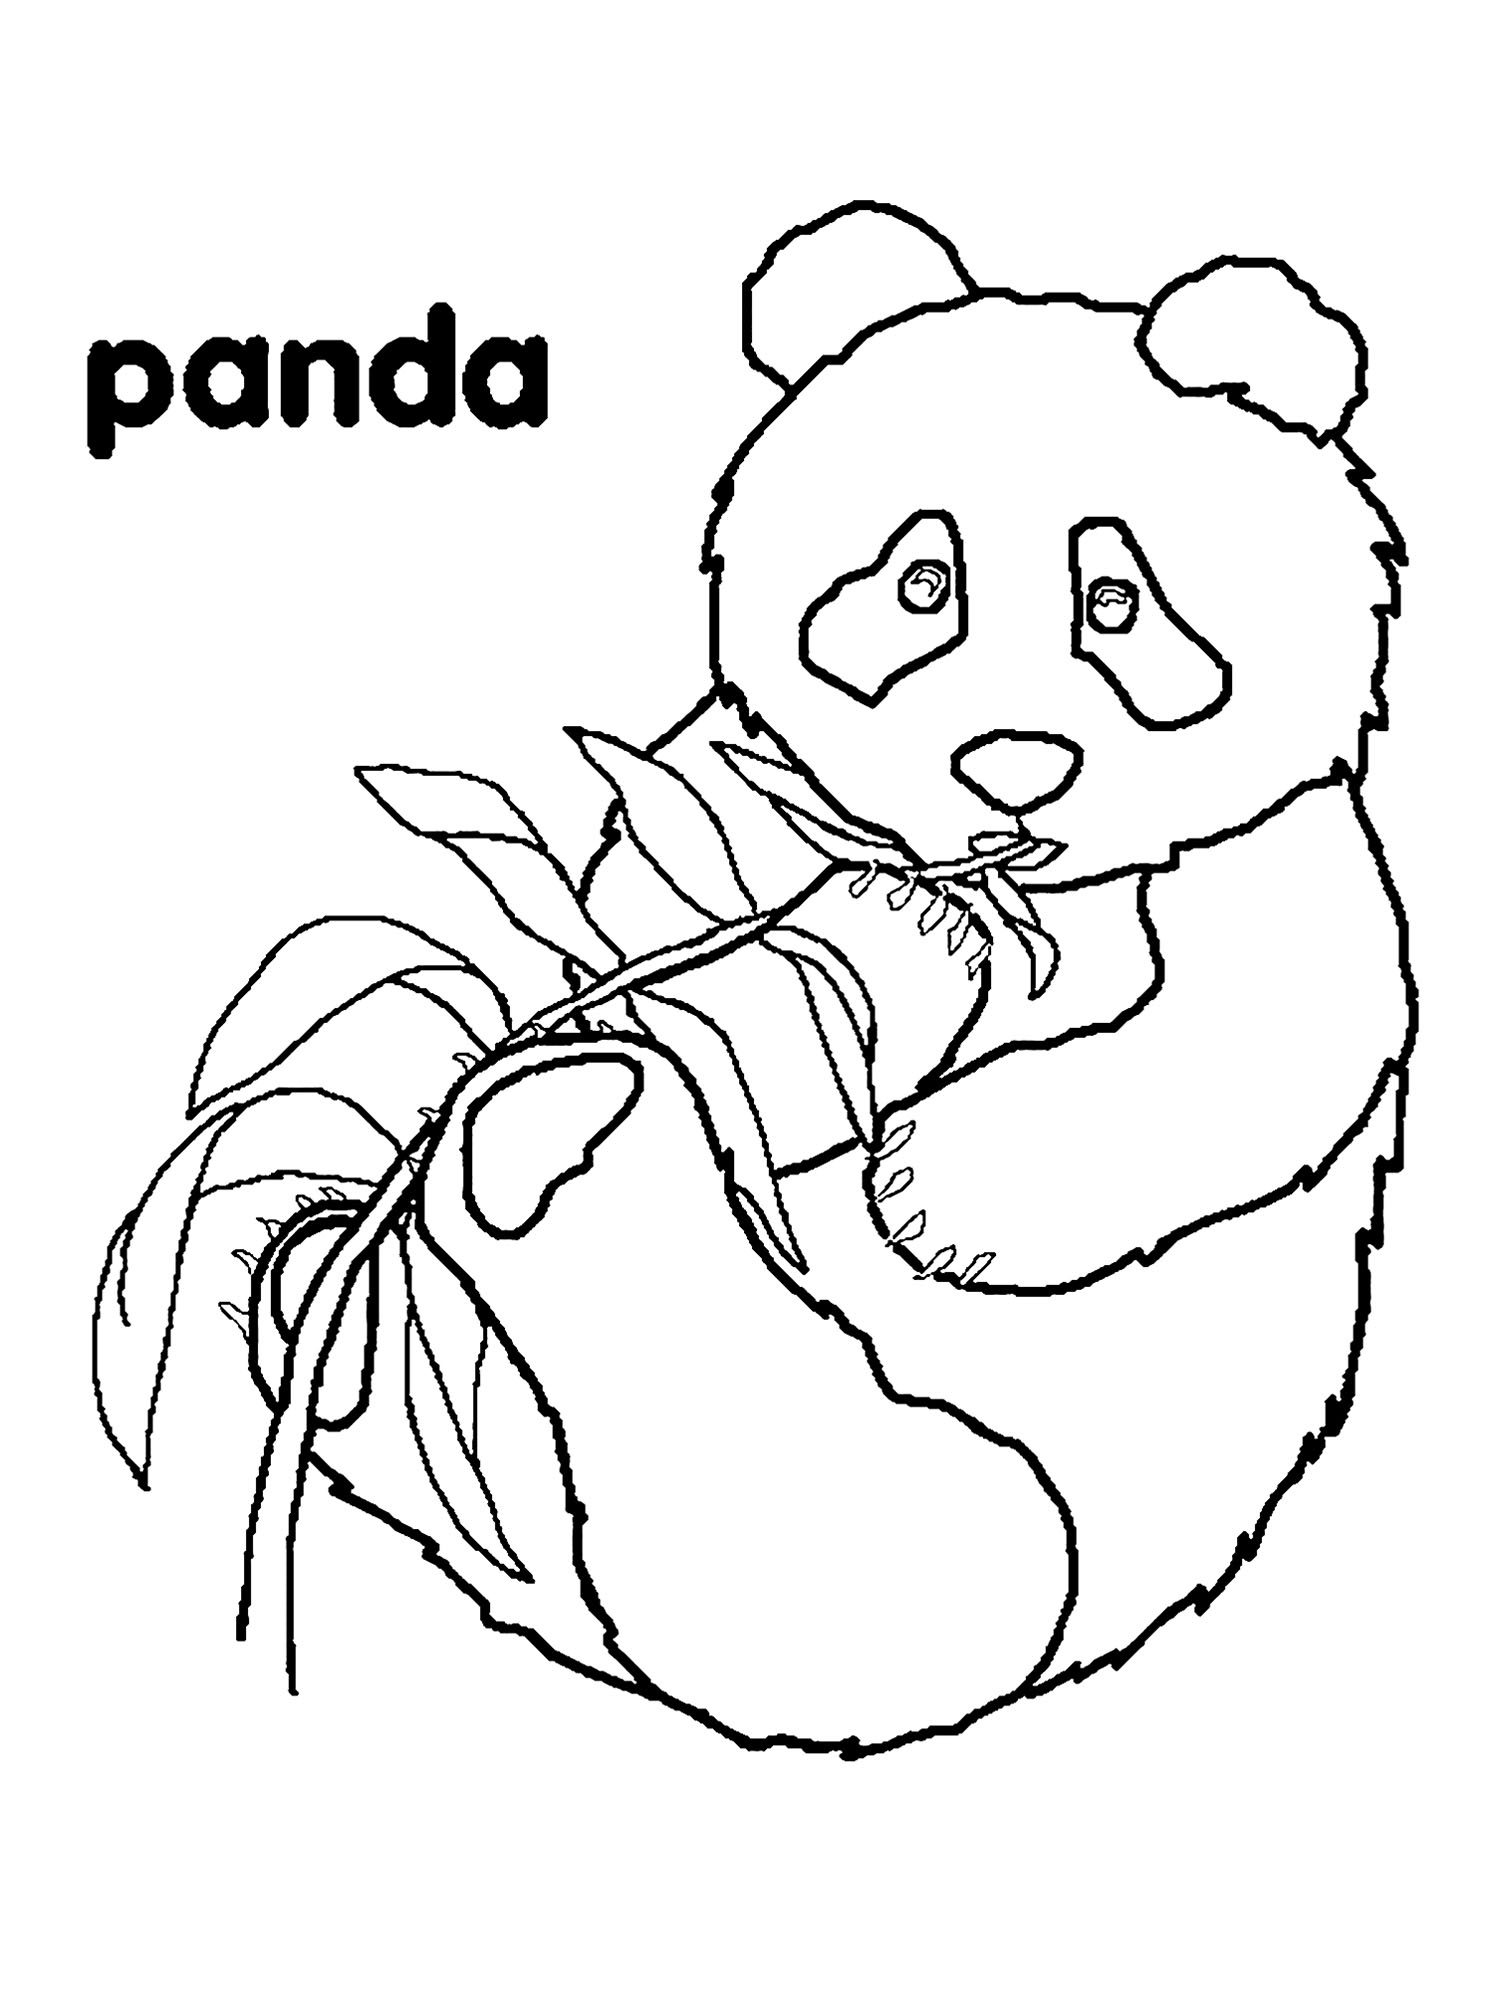 Pandas for children - Pandas Kids Coloring Pages